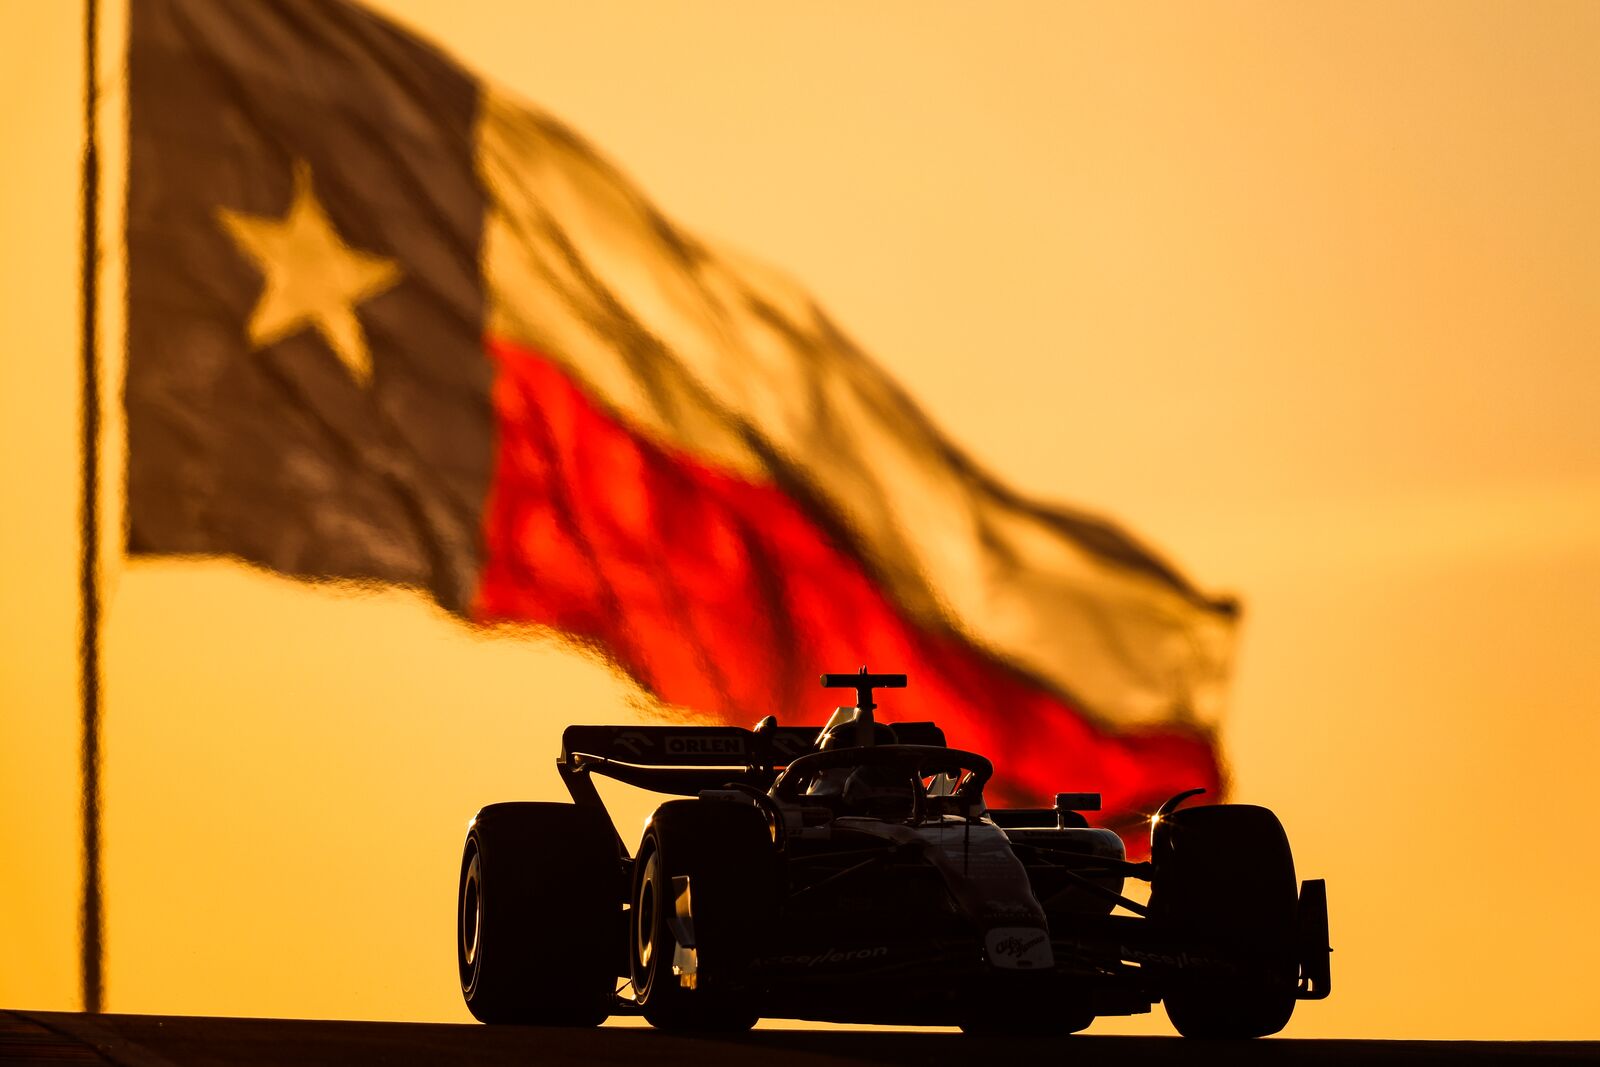 United States Grand Prix 2023: Where will the Formula 1 United States Grand  Prix be?